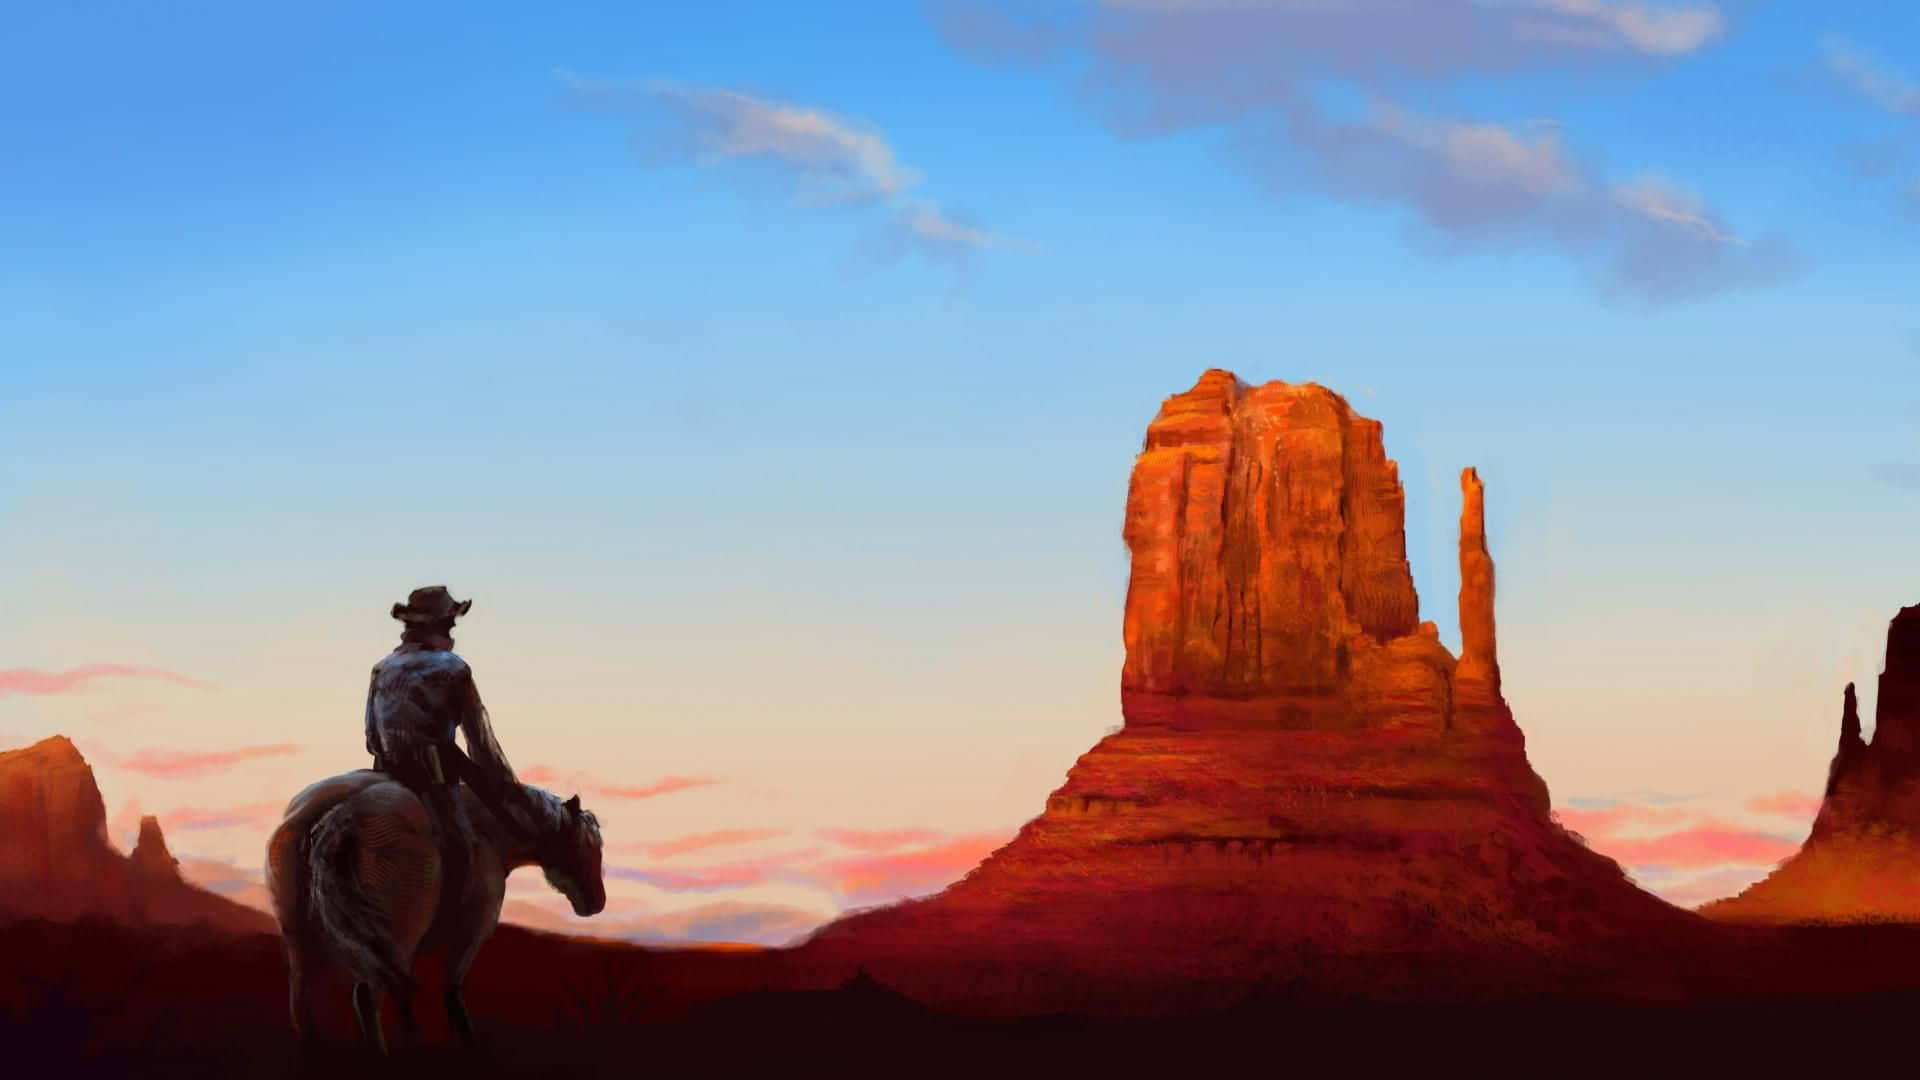 Cowboys ride across the vast Wild West landscape